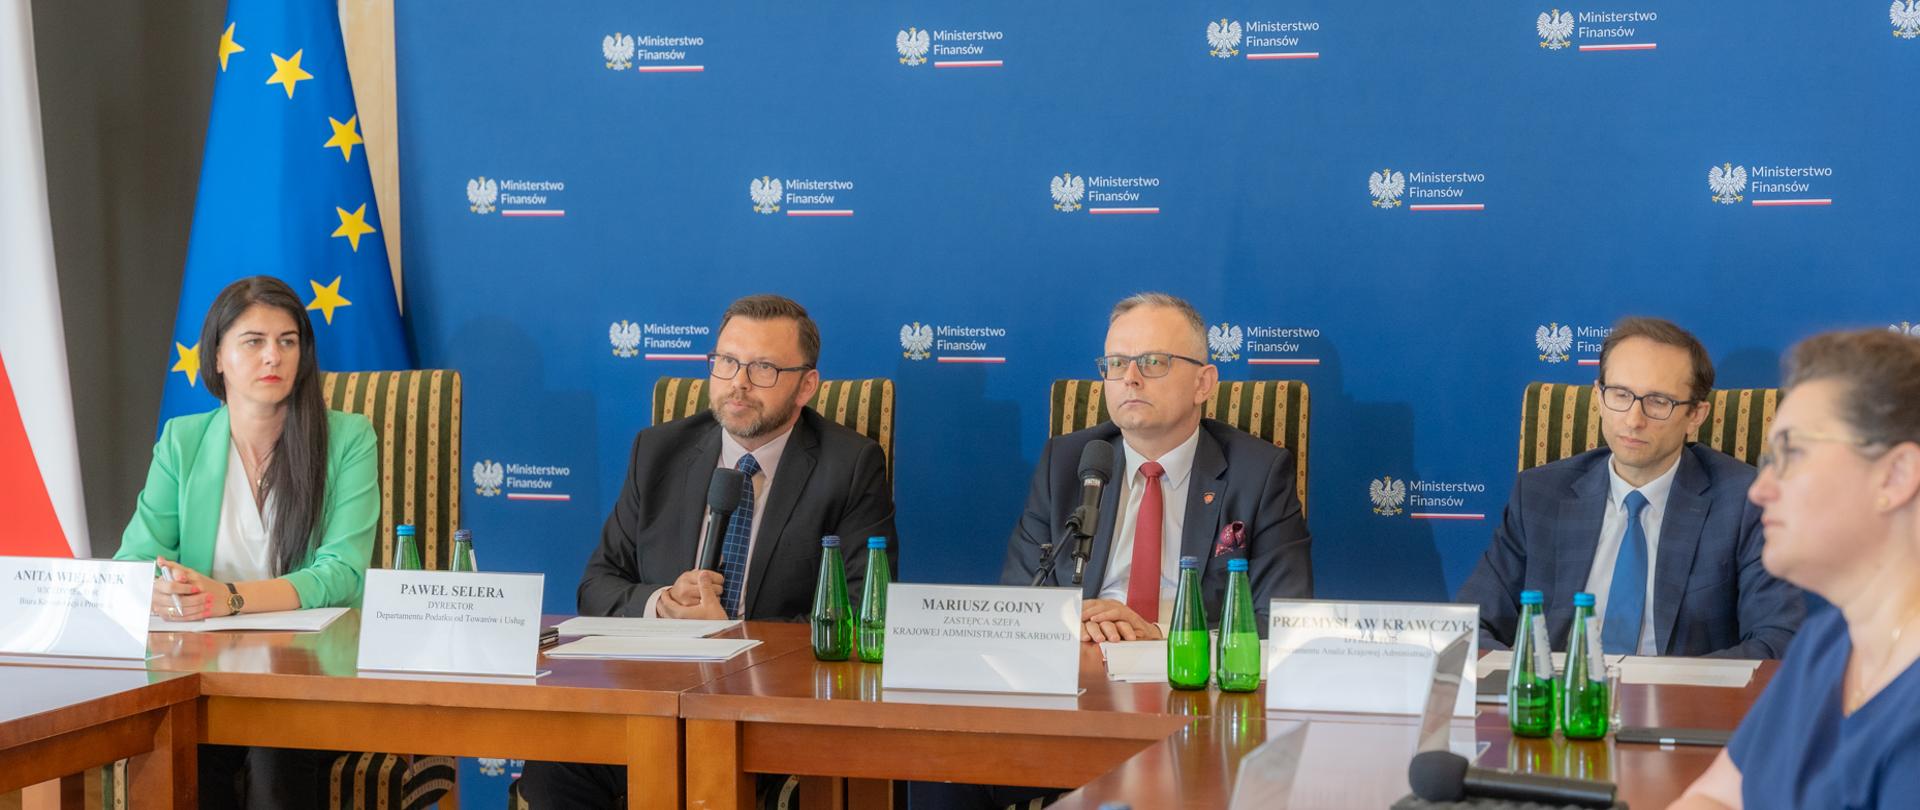 Konferencja MF, na zdjęciu m.in. Mariusz Gojny zastępca Szefa Krajowej Administracji Skarbowej.